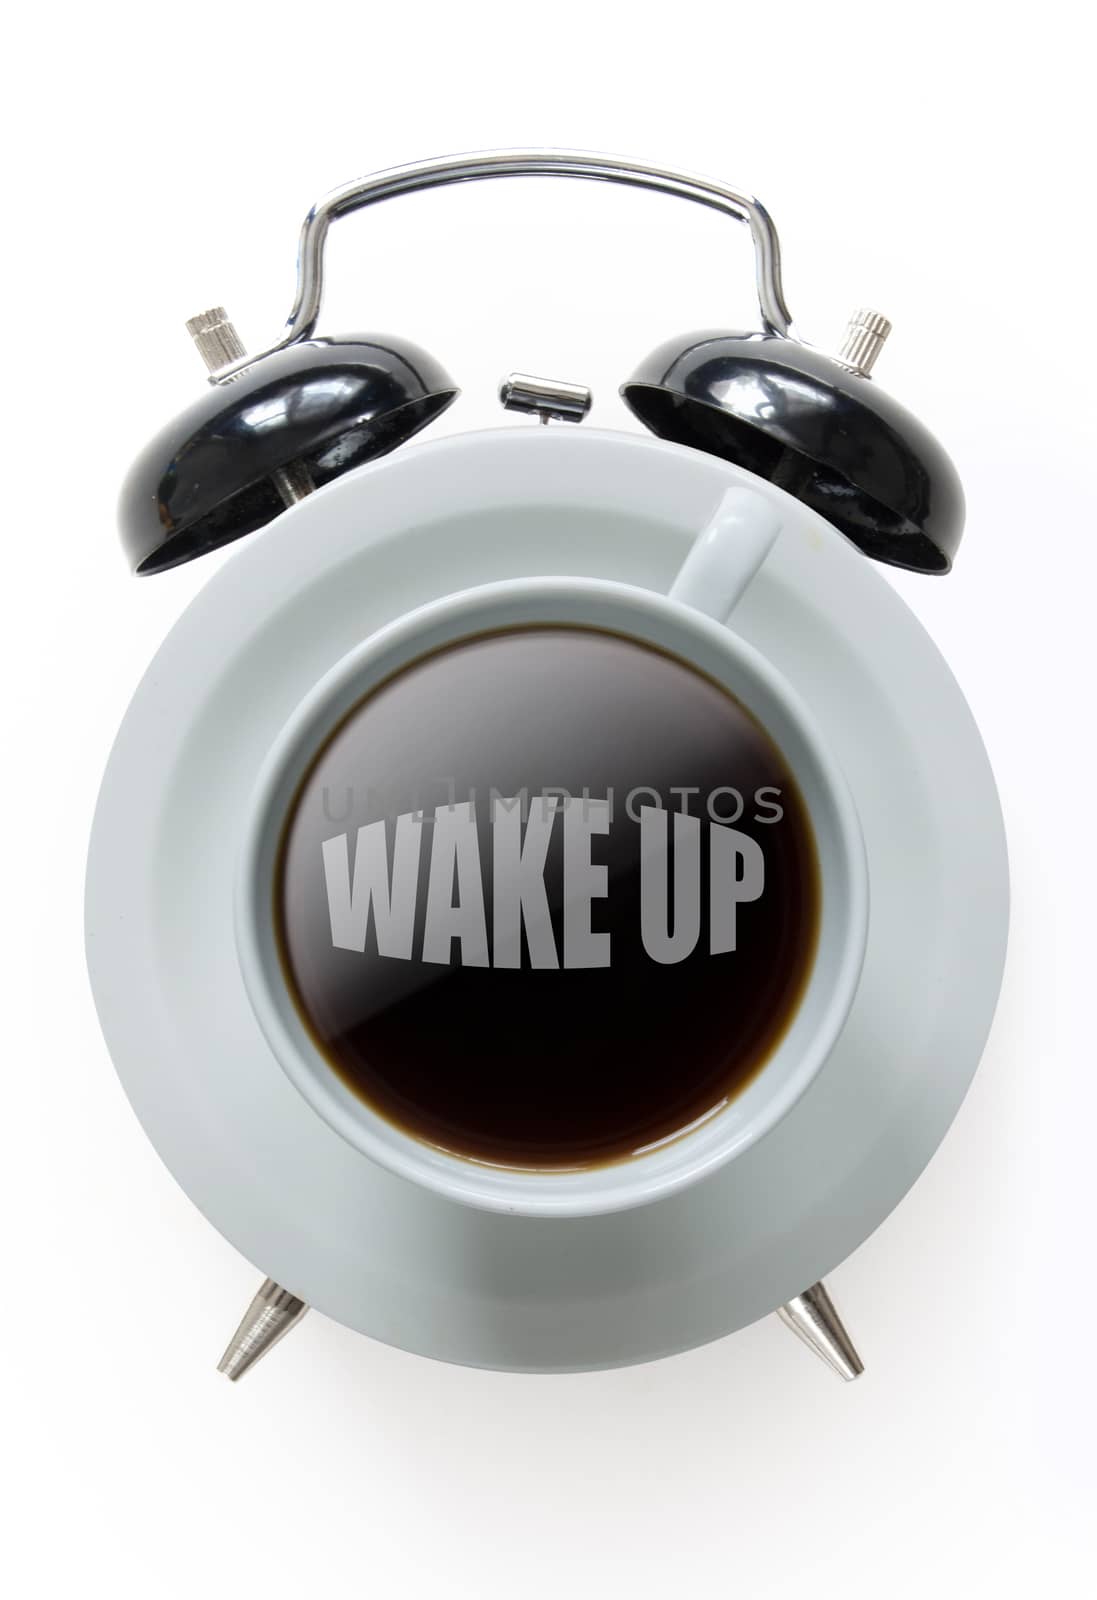 Wake up coffee by unikpix